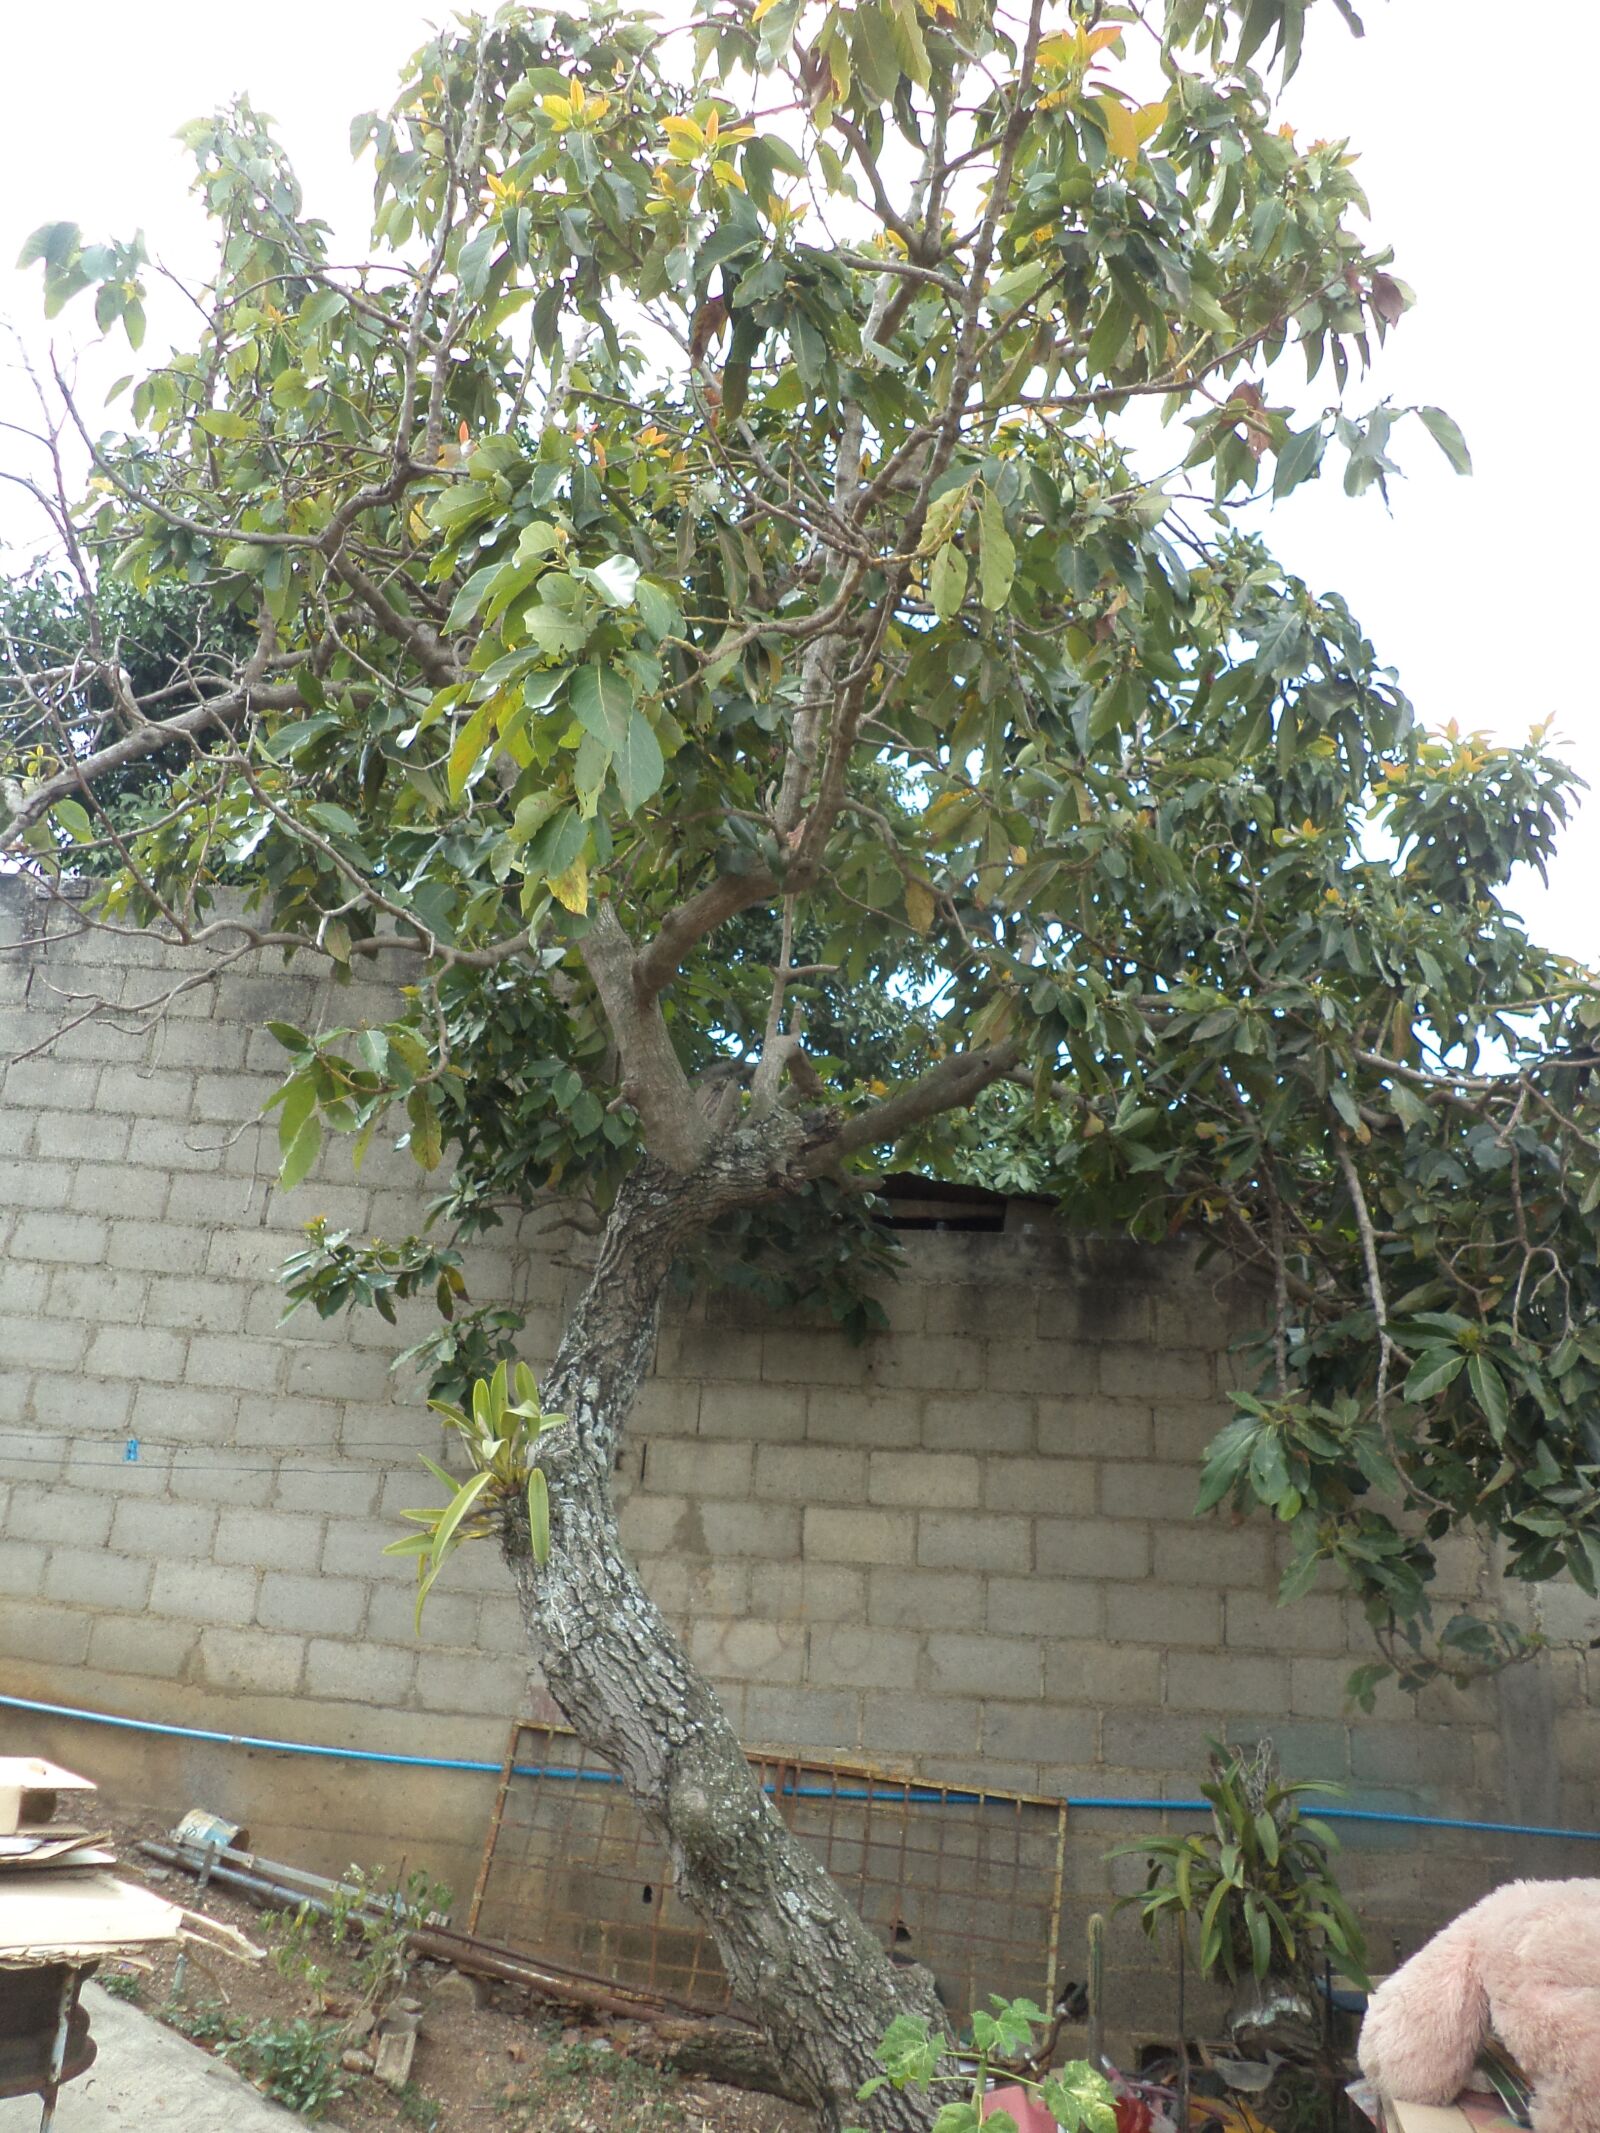 Sony DSC-W620 sample photo. Tree of avocado, mata photography